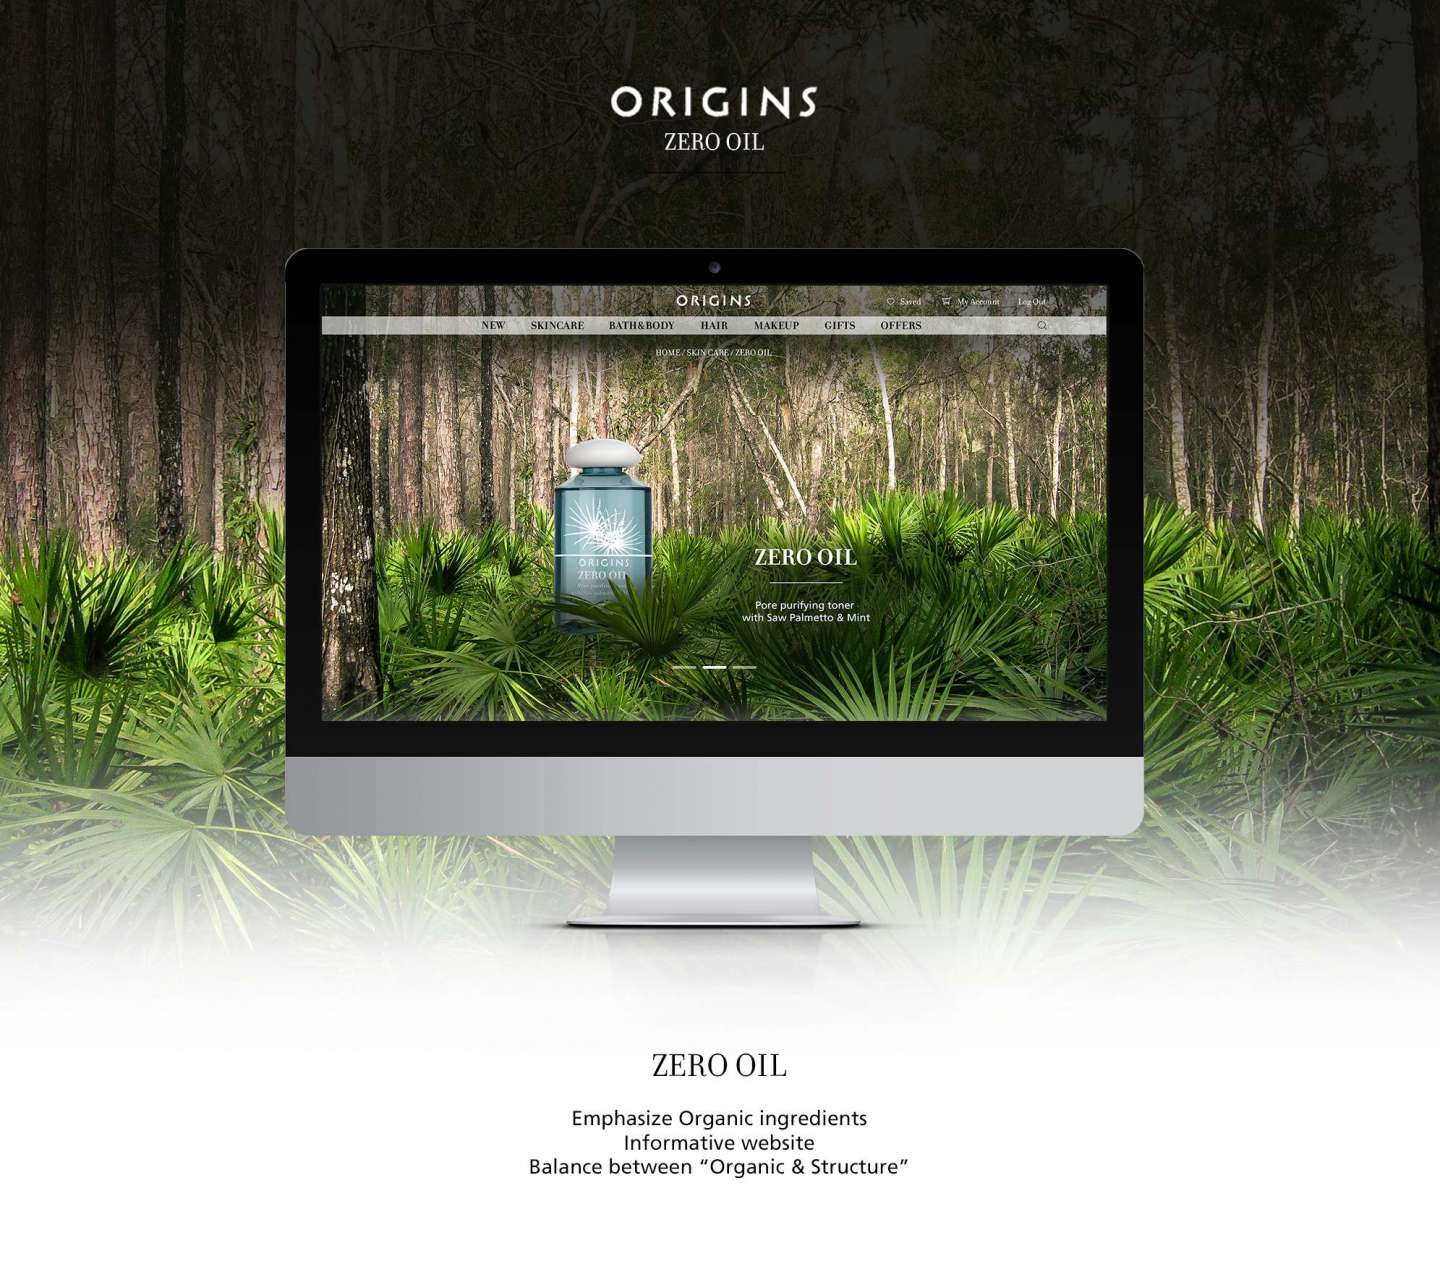 Origins Zero Oil Website redesign